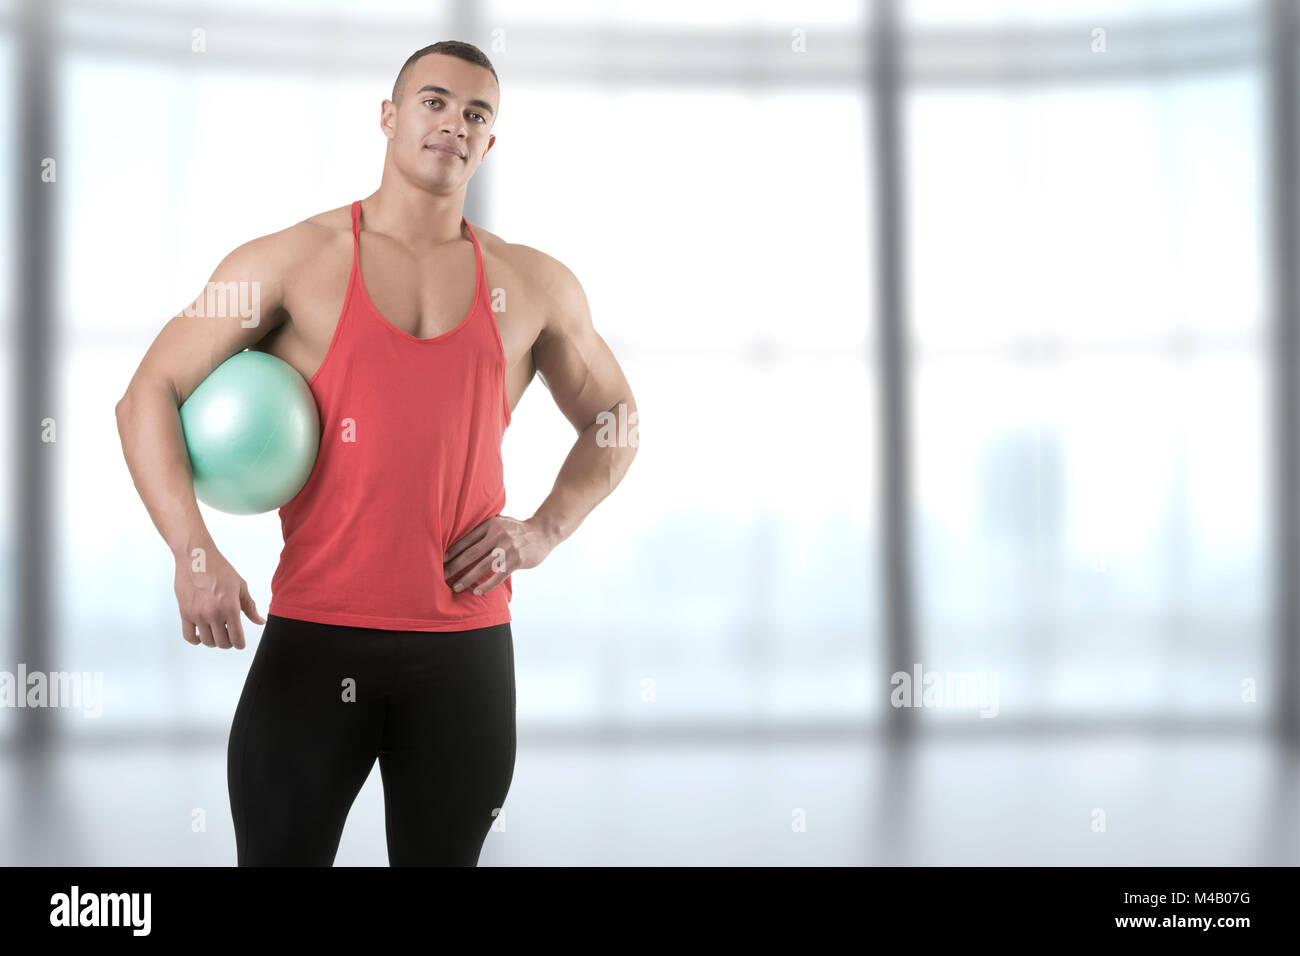 Passen Mann stand mit einem Pilates Ball Stockfoto